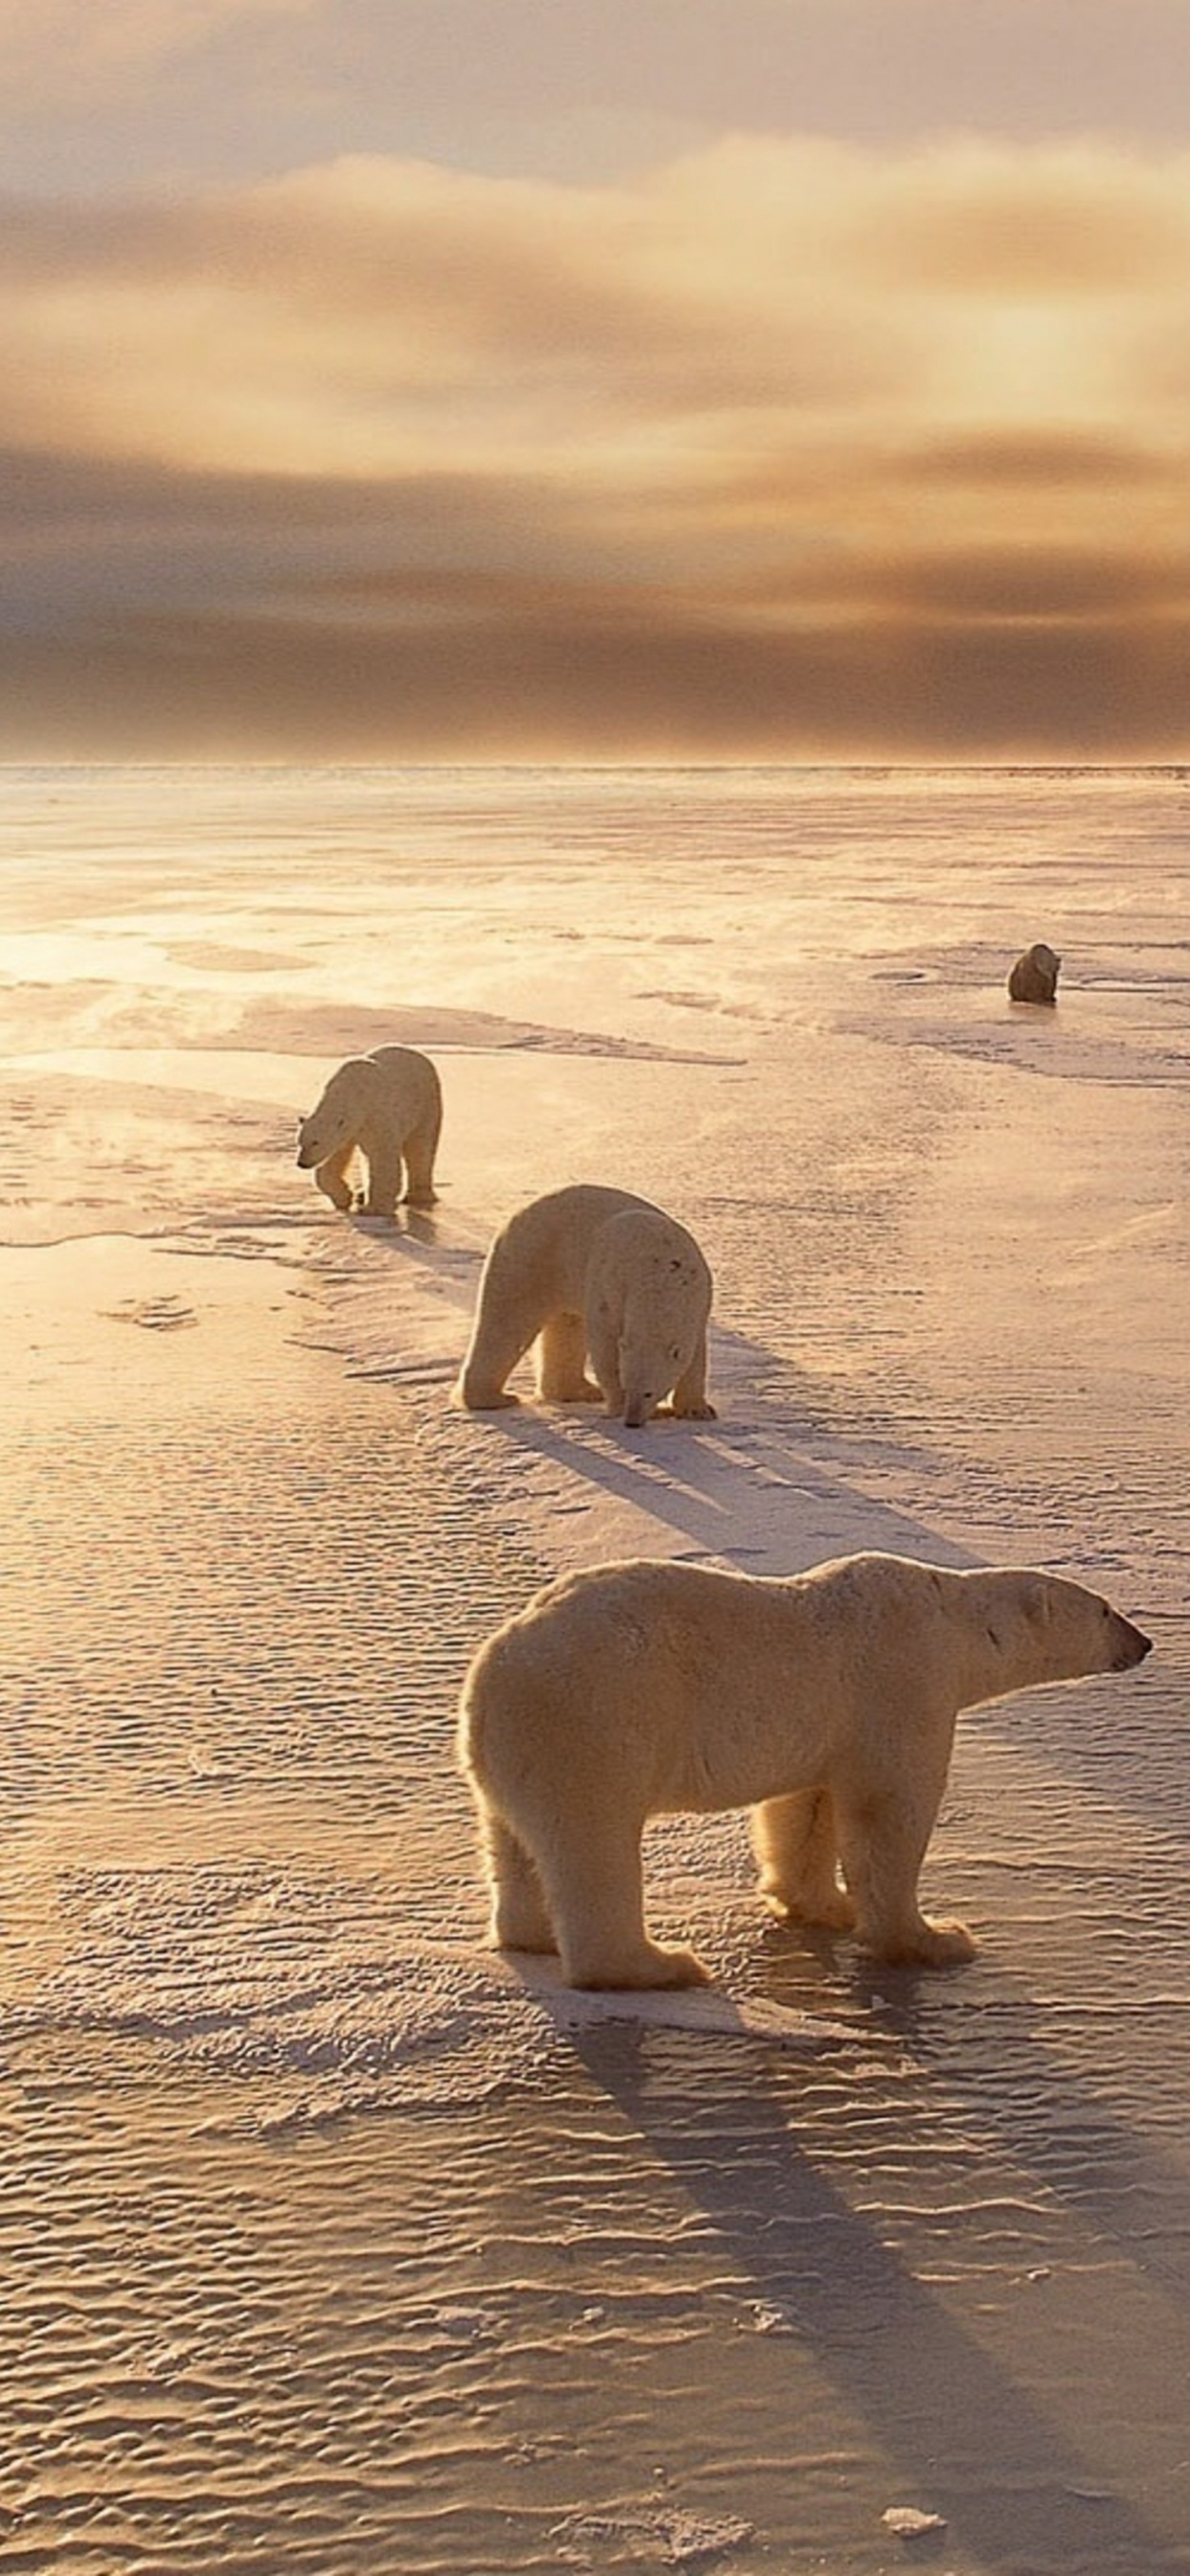 北极熊, 冷静, 沙, 野生动物, 北极 壁纸 1242x2688 允许